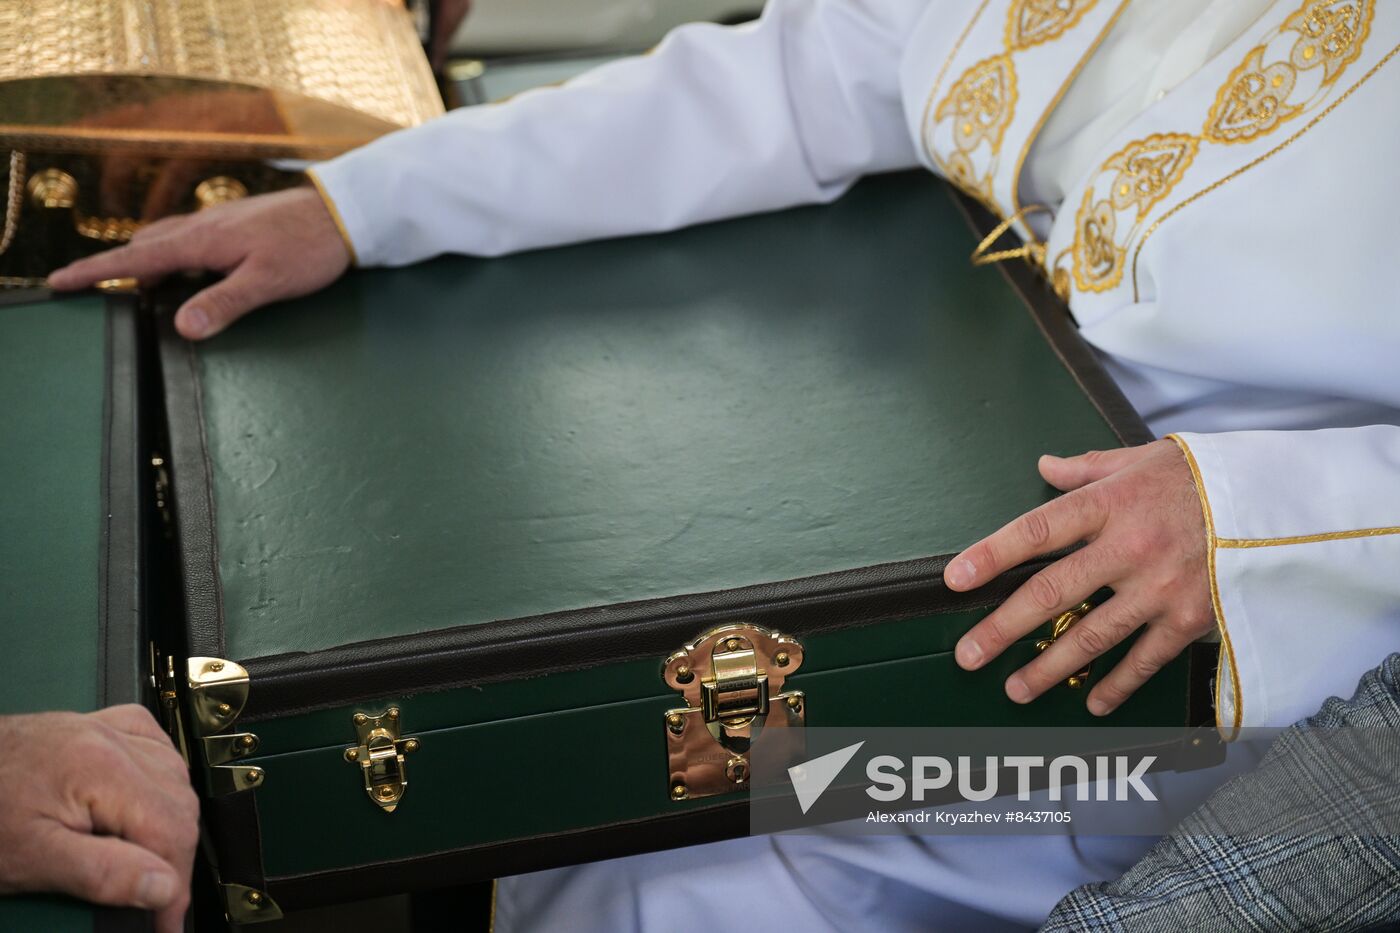 KAZANFORUM 2023. Prophet Muhammad's Relics Delivered to Kazan